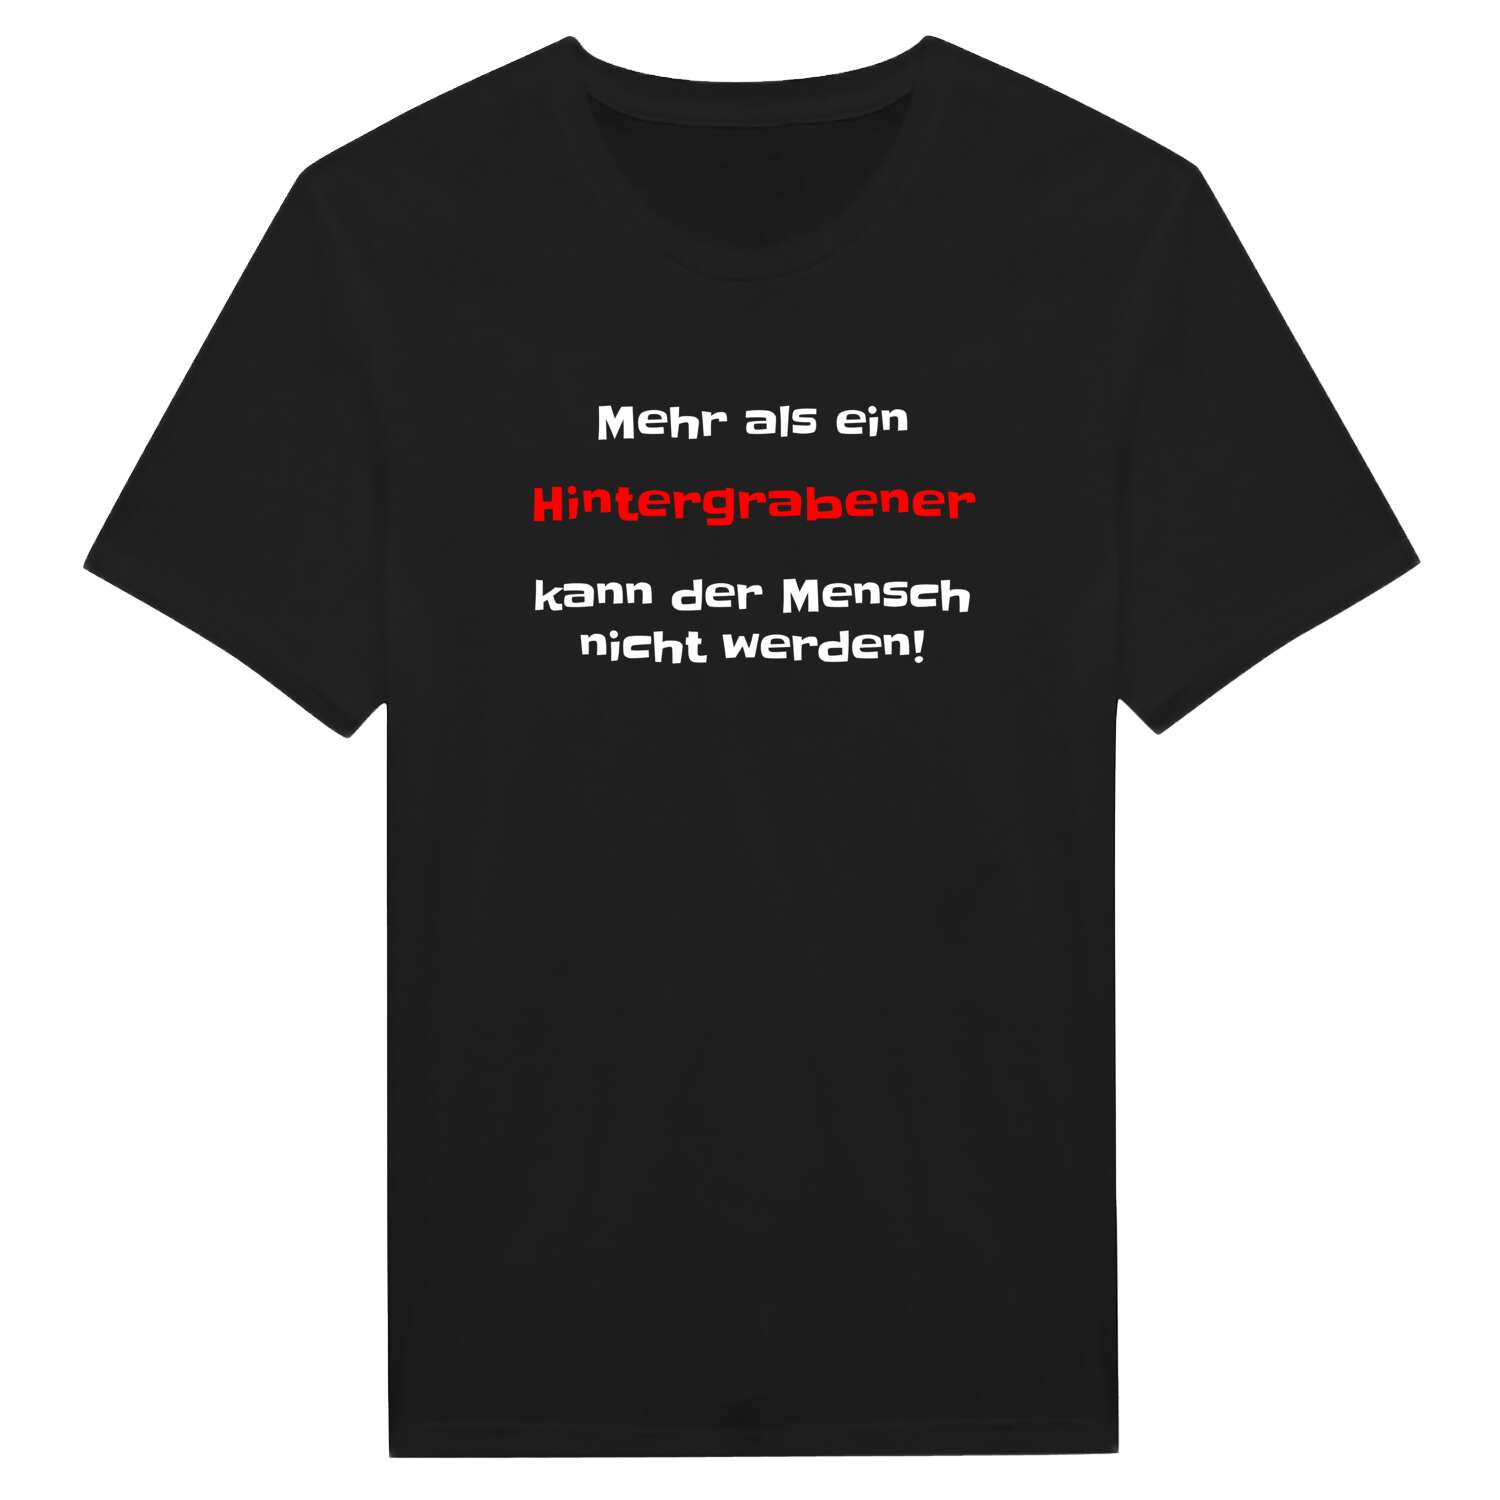 Hintergraben T-Shirt »Mehr als ein«